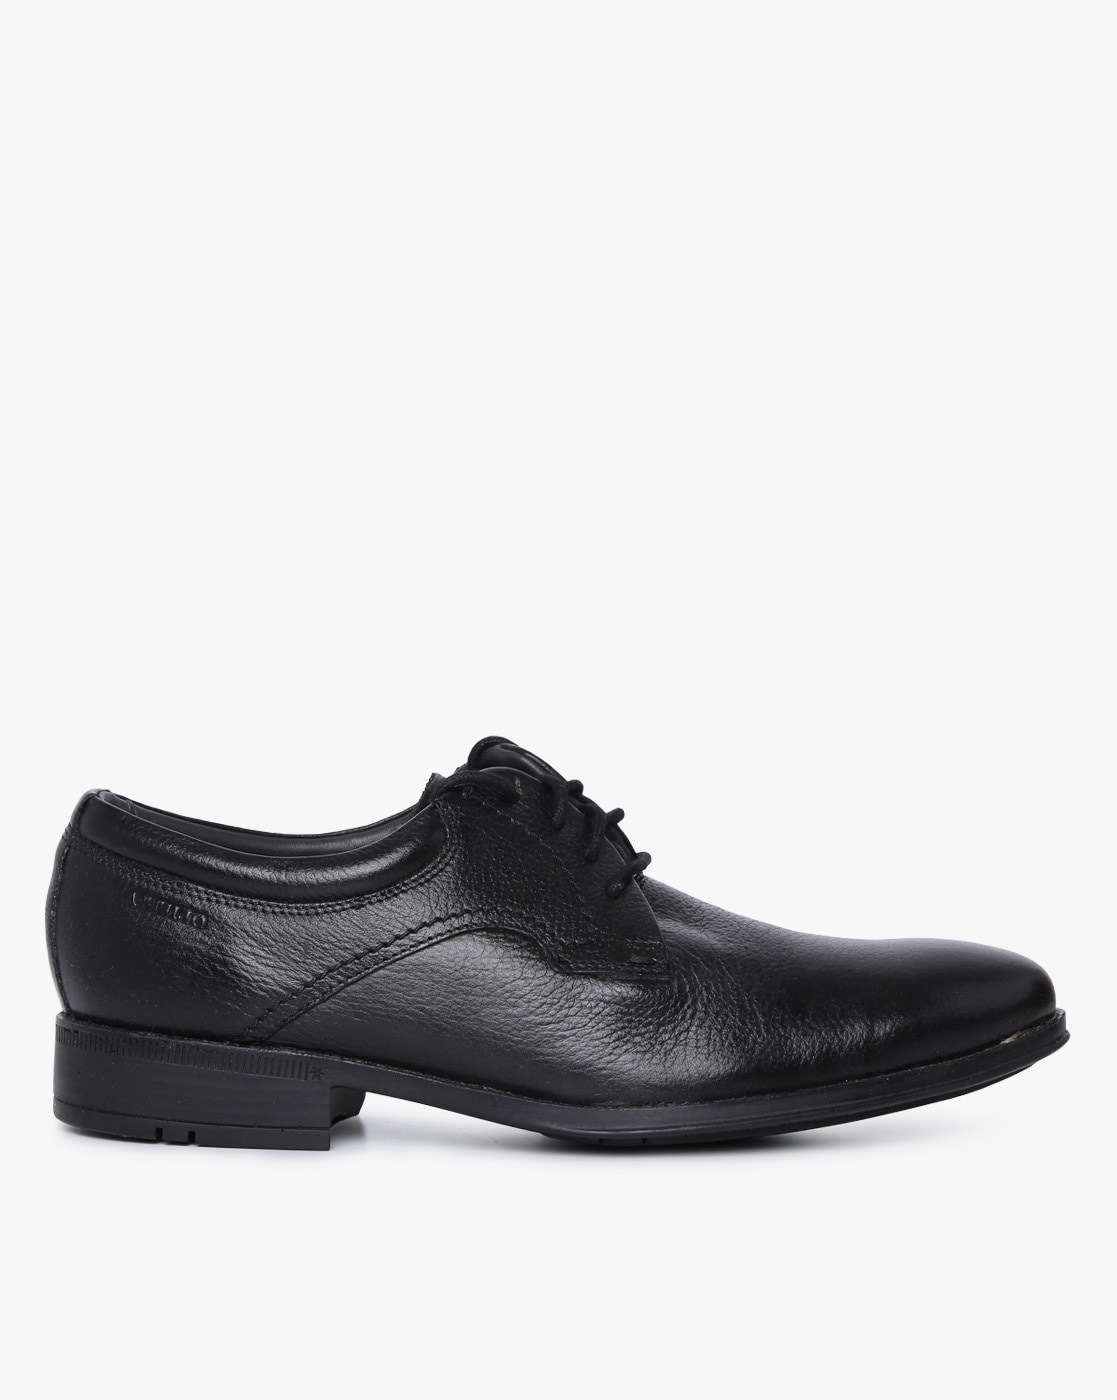 attilio formal shoes